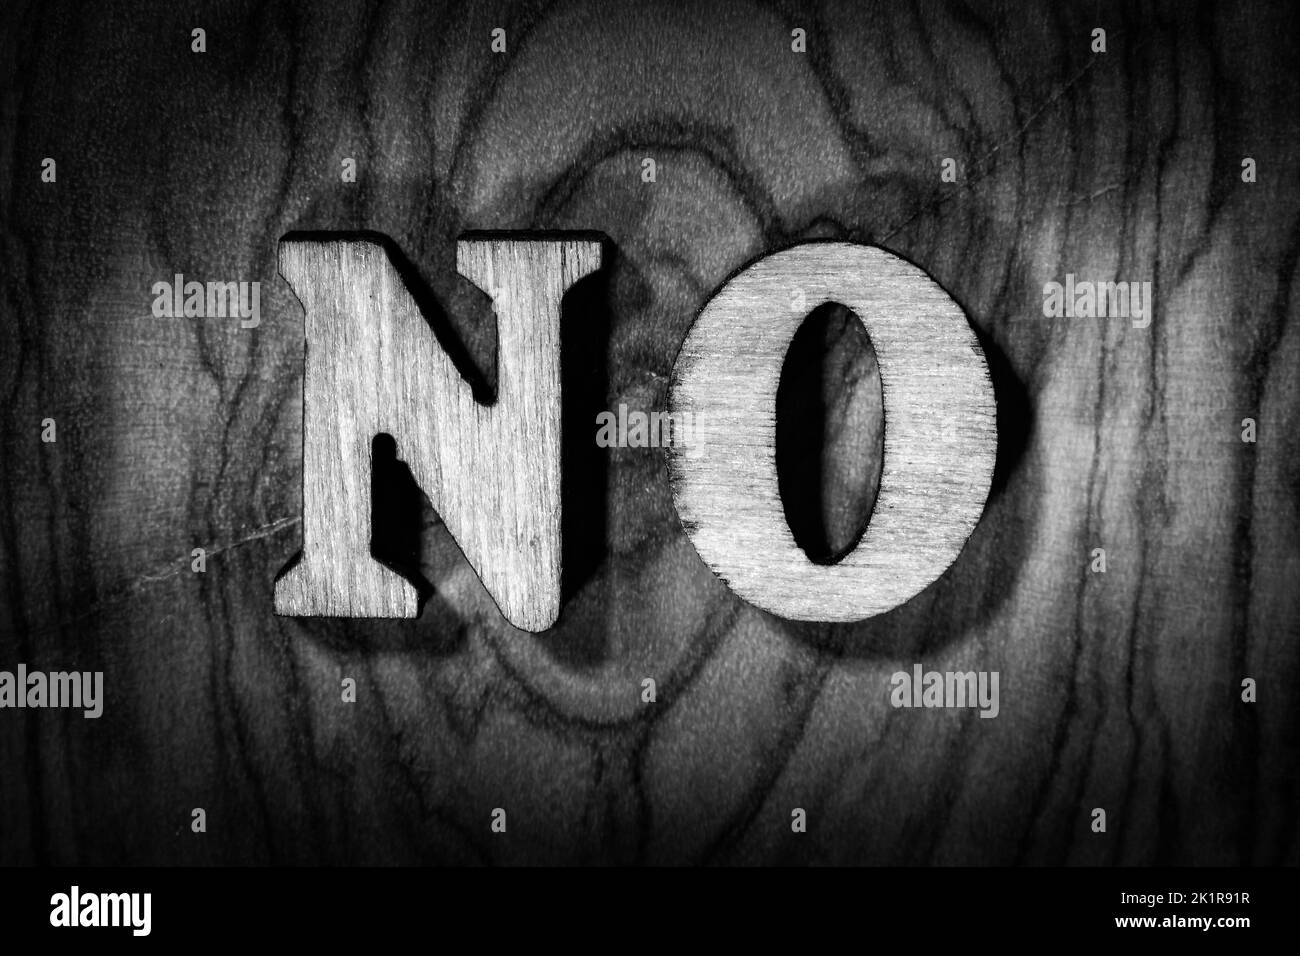 'No' word - Iscrizione con lettere di legno in primo piano. Immagine in bianco e nero Foto Stock